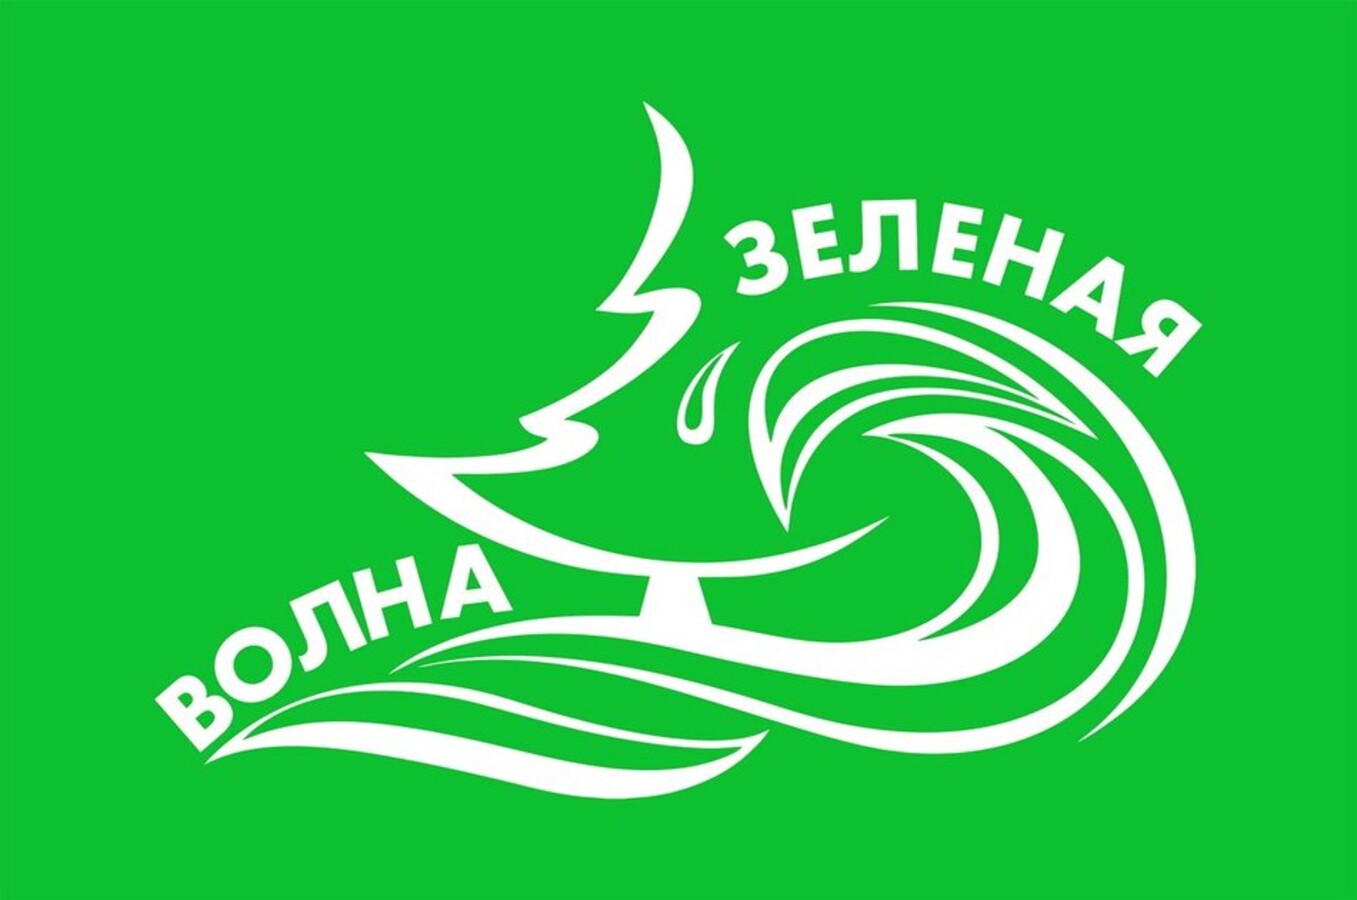 В Барнауле подвели итоги второго Городского слёта юных экологов 